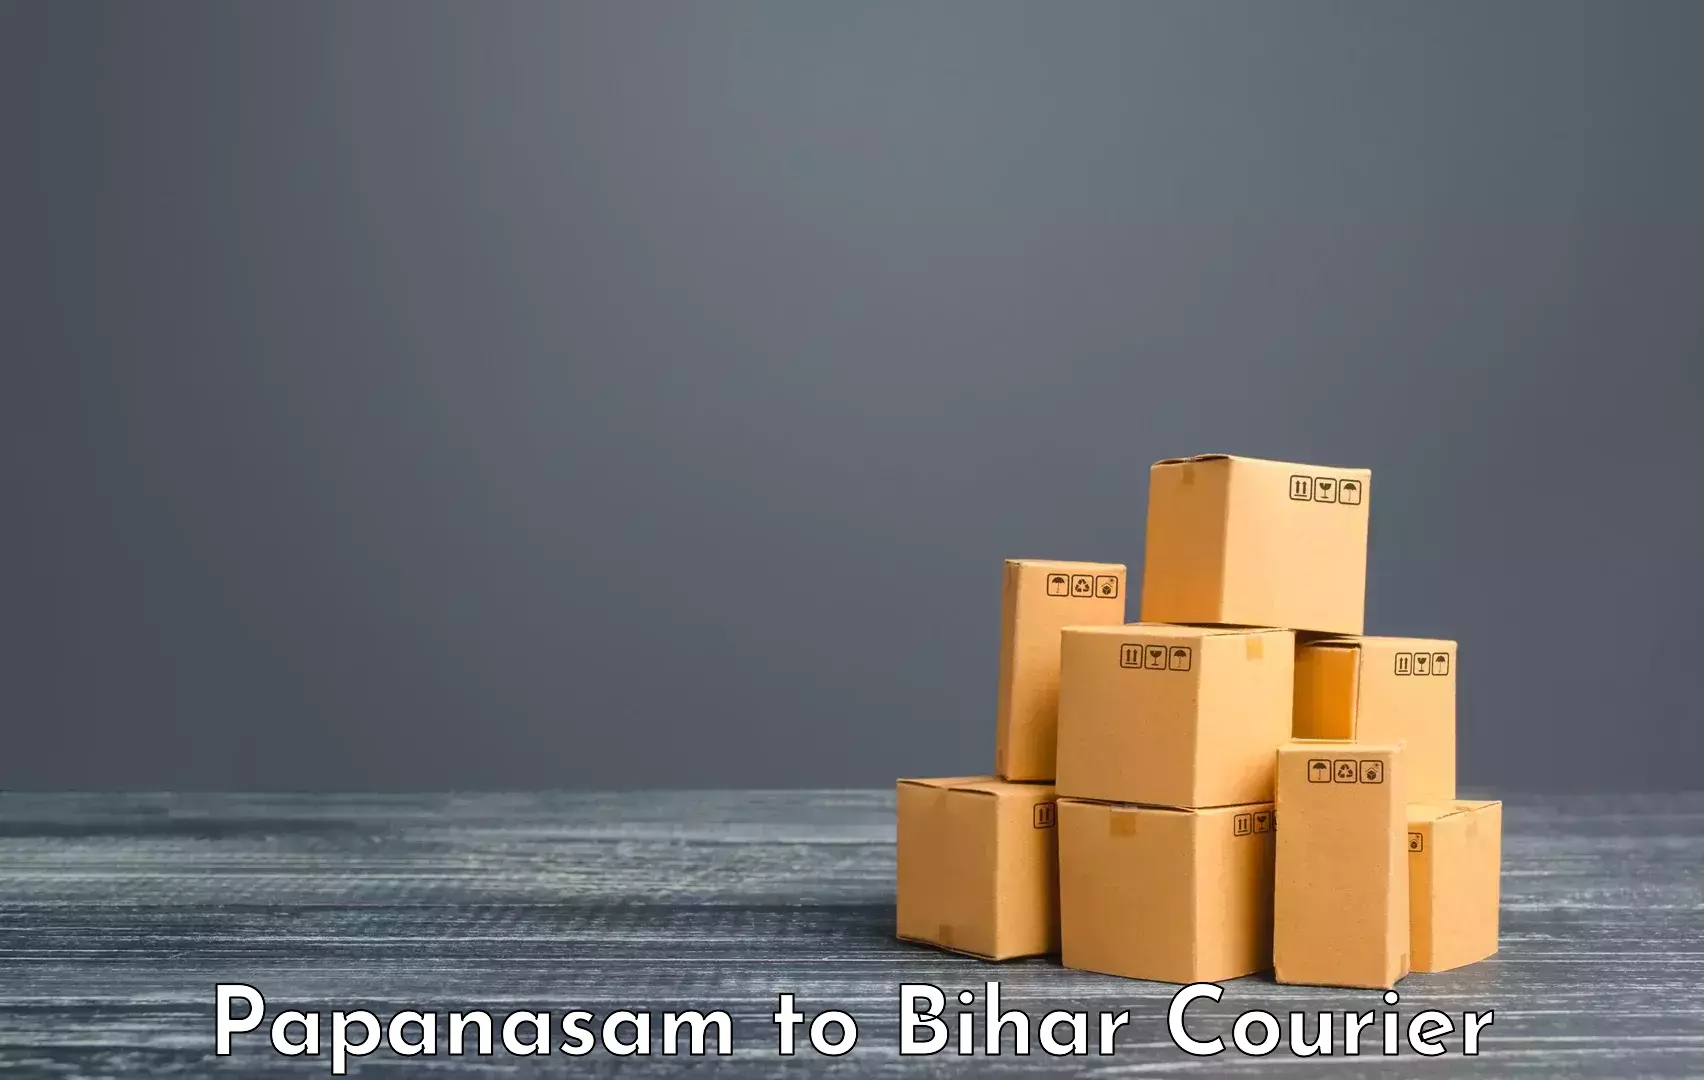 Electronic items luggage shipping Papanasam to Bikramganj